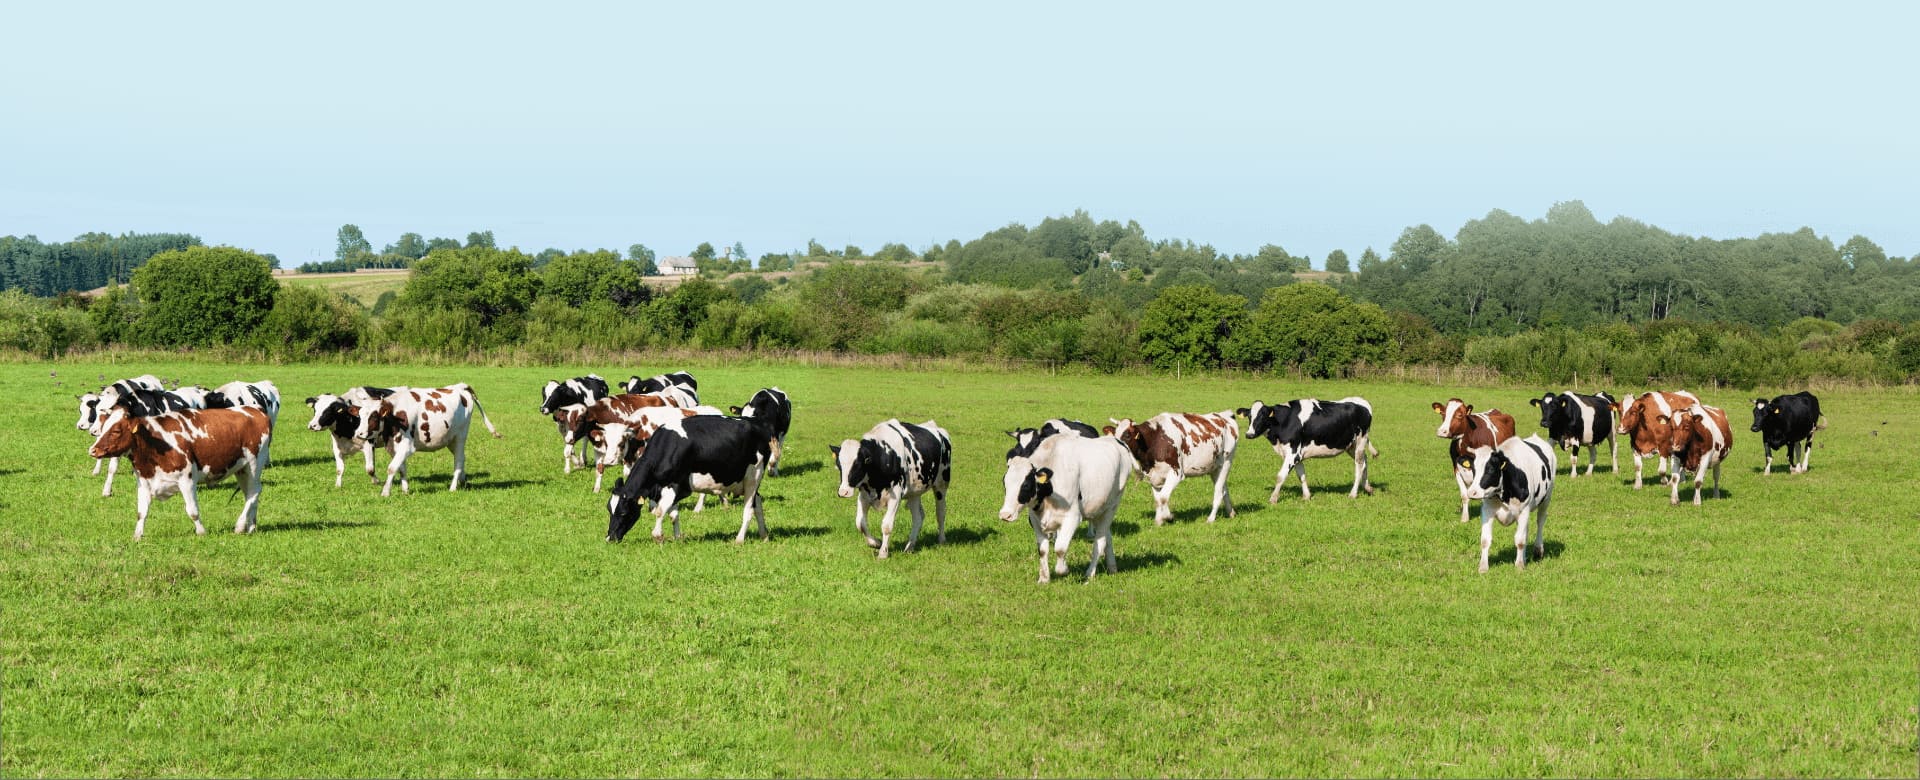 Bannière elevage mise en paturage vaches laitières vue 2